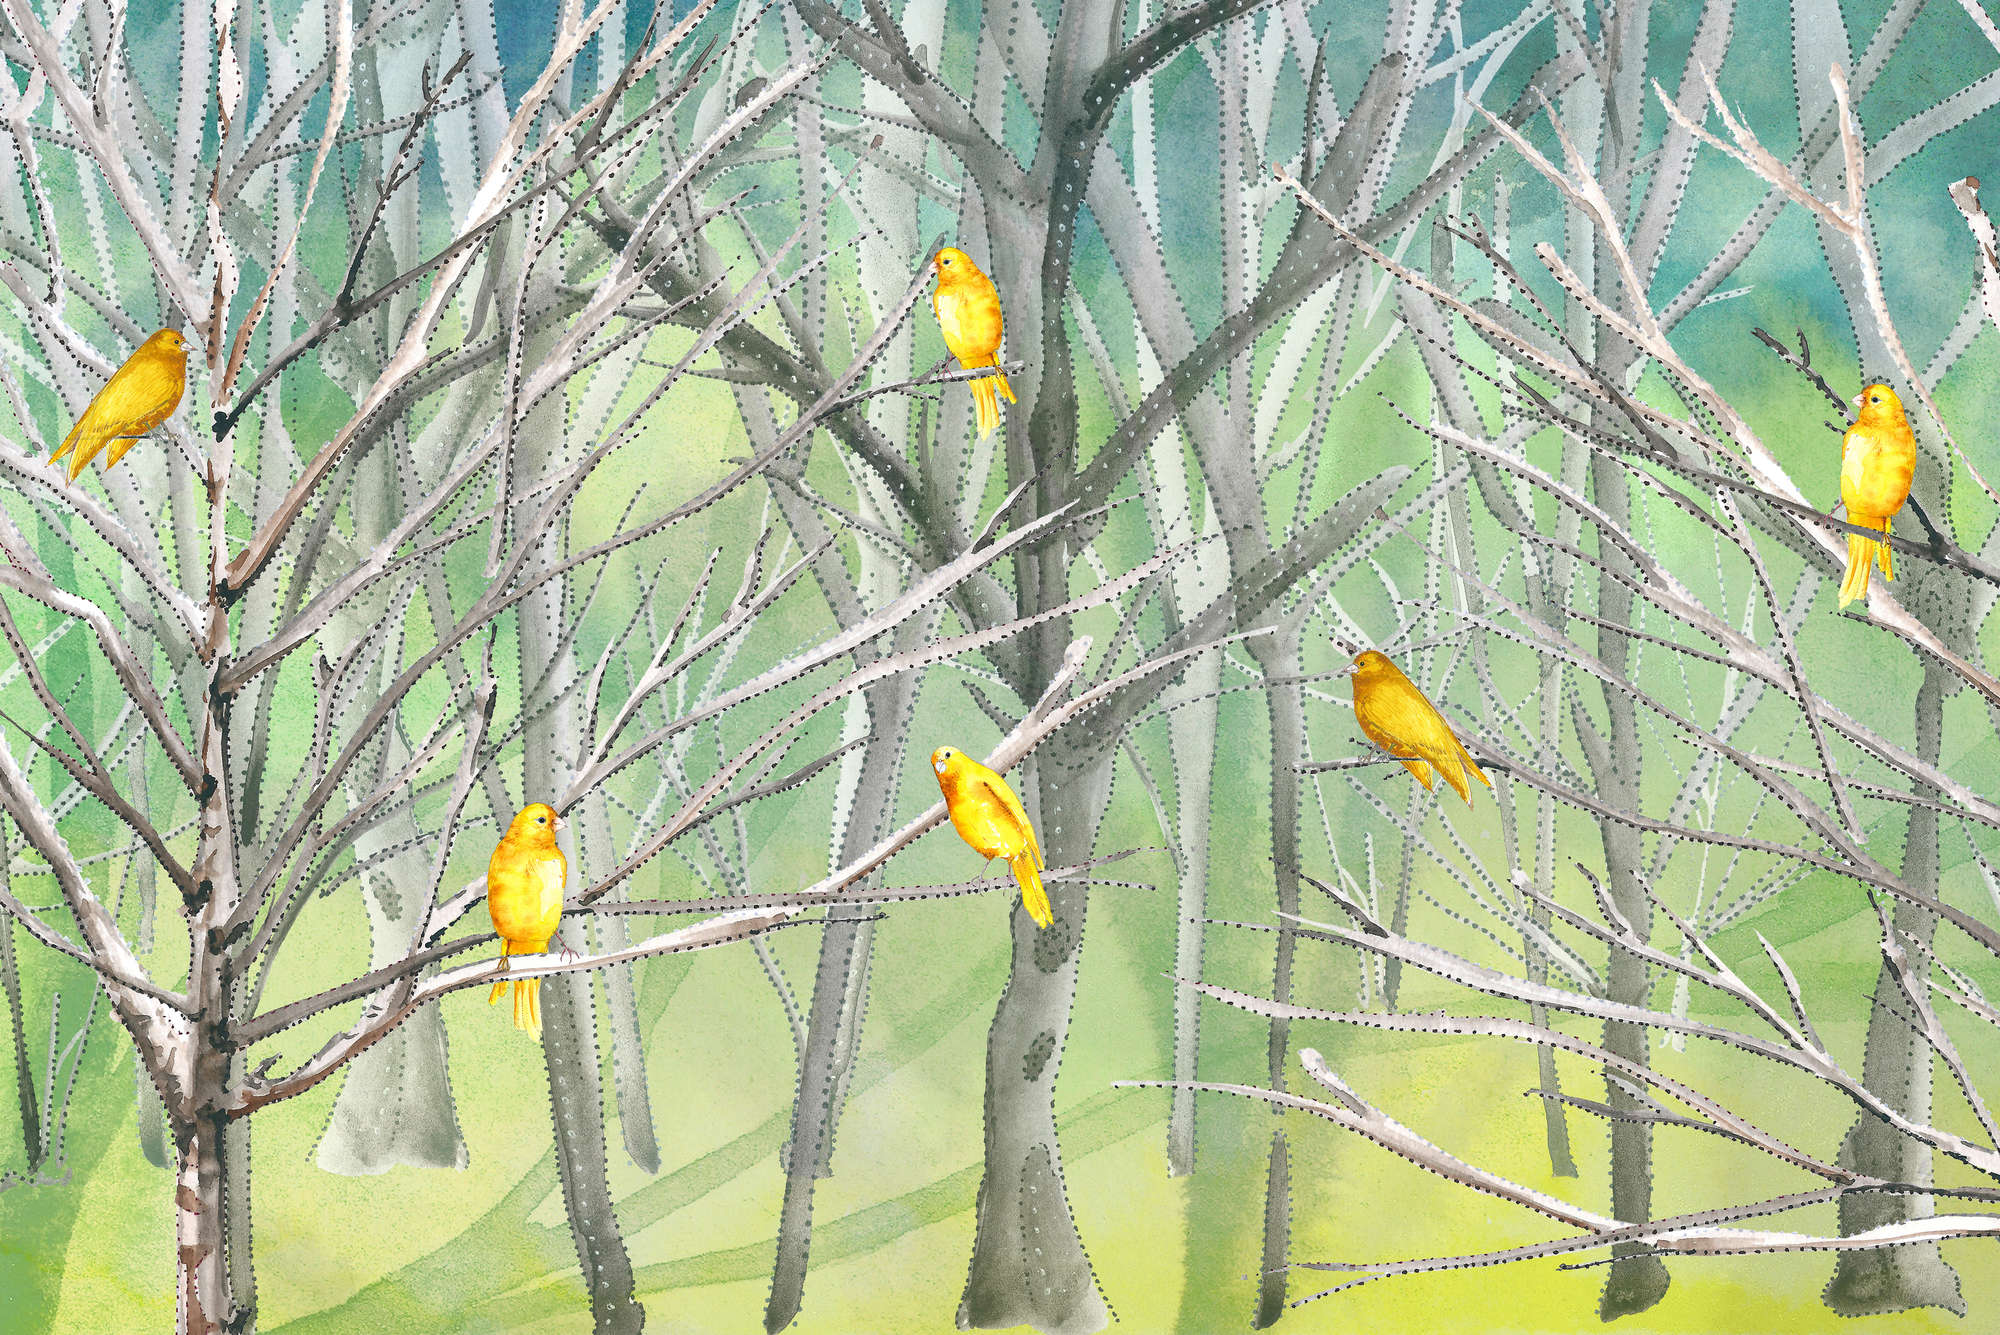             Wald Fototapete mit Vögeln in Blau und Gelb auf Strukturvlies
        